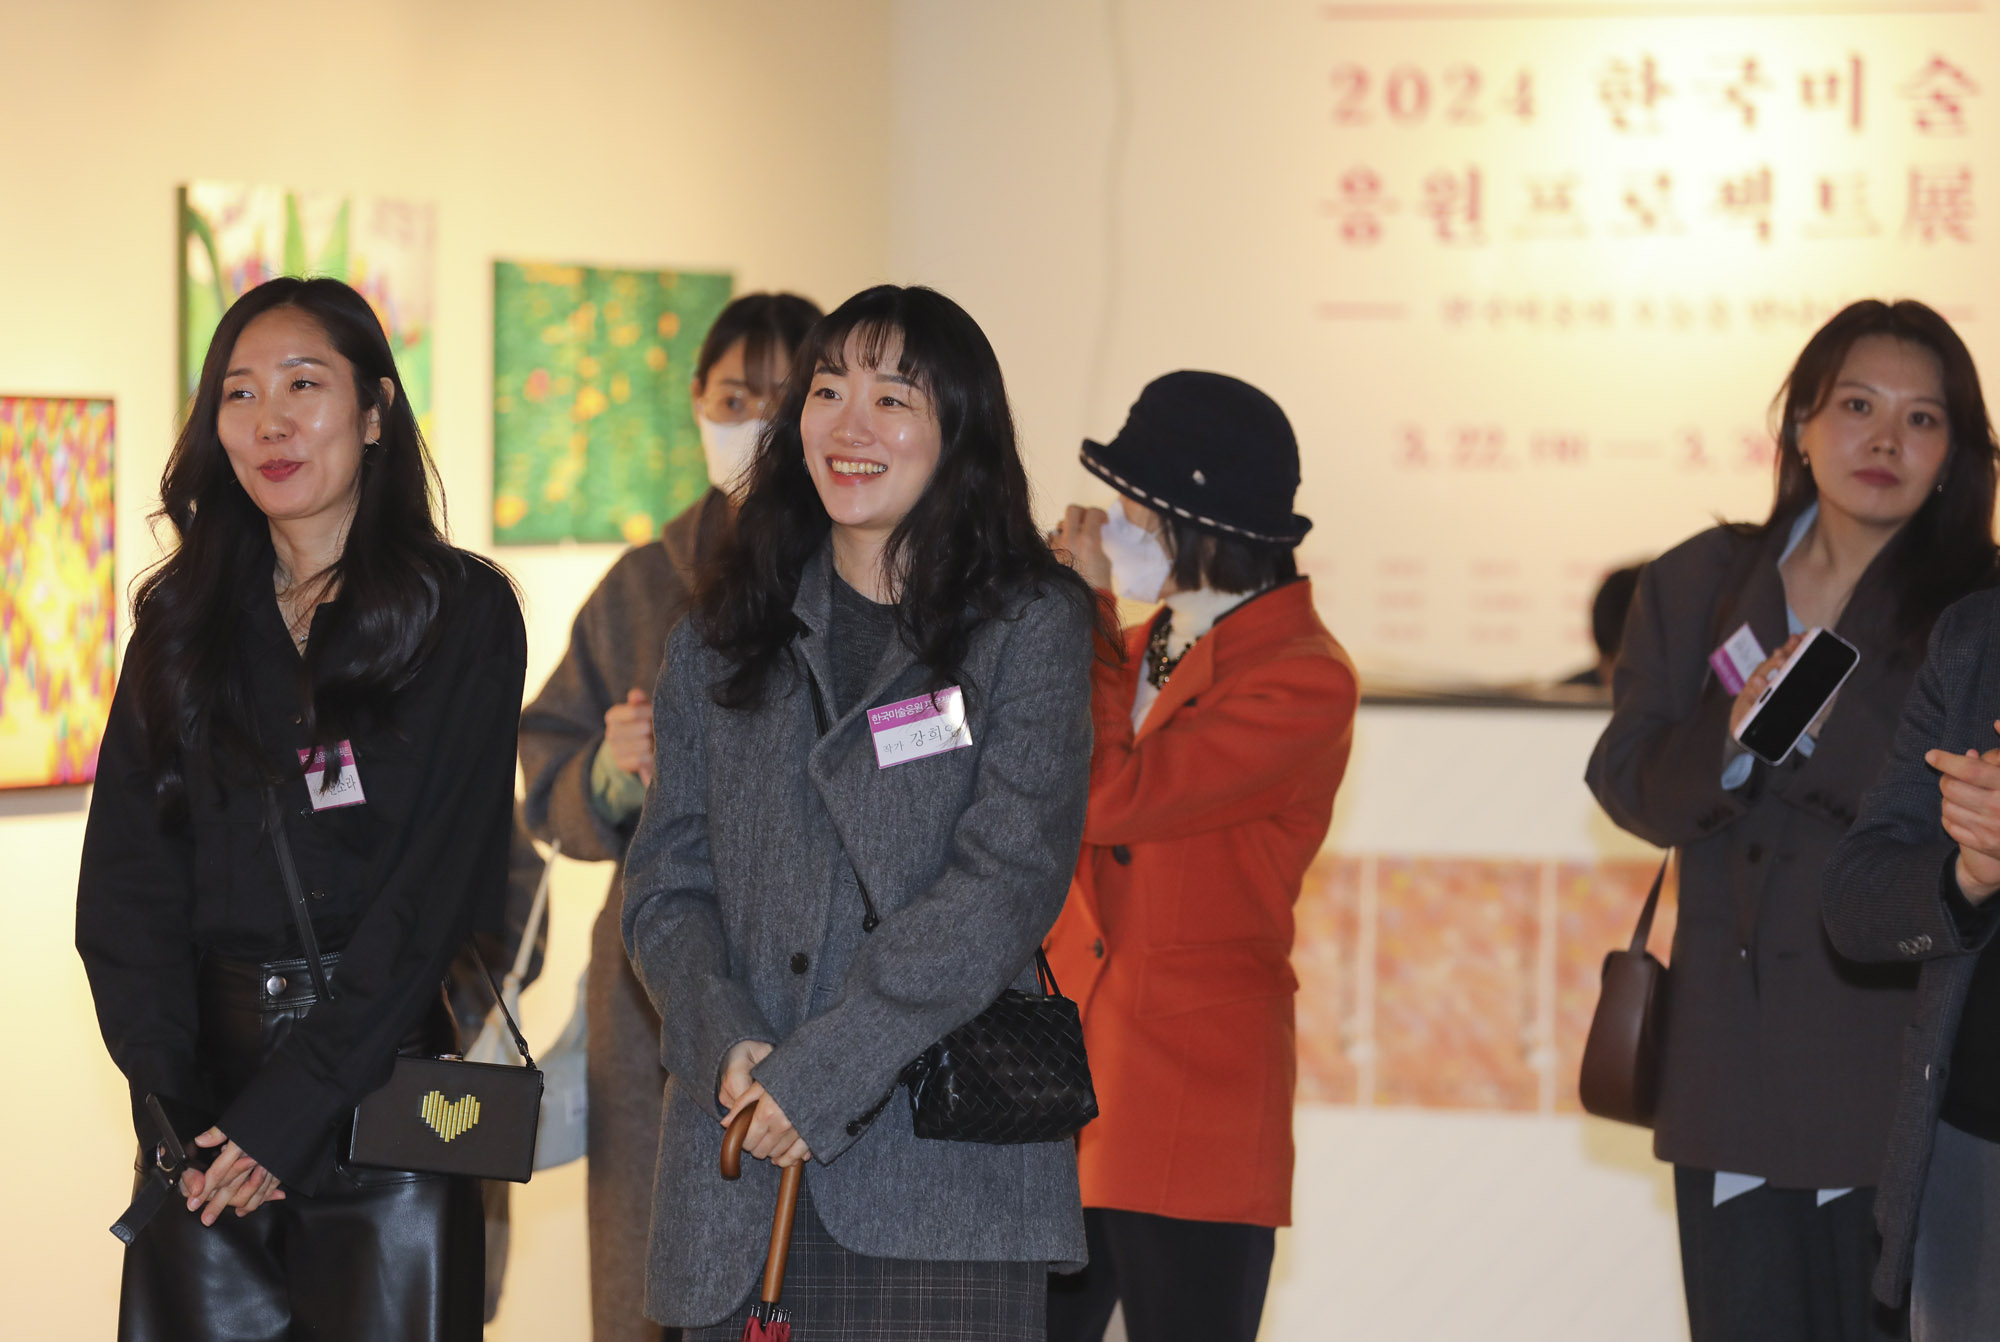 한국미술응원프로젝트;화가의방;전시;한가람미술관;그림;비즈한국전시